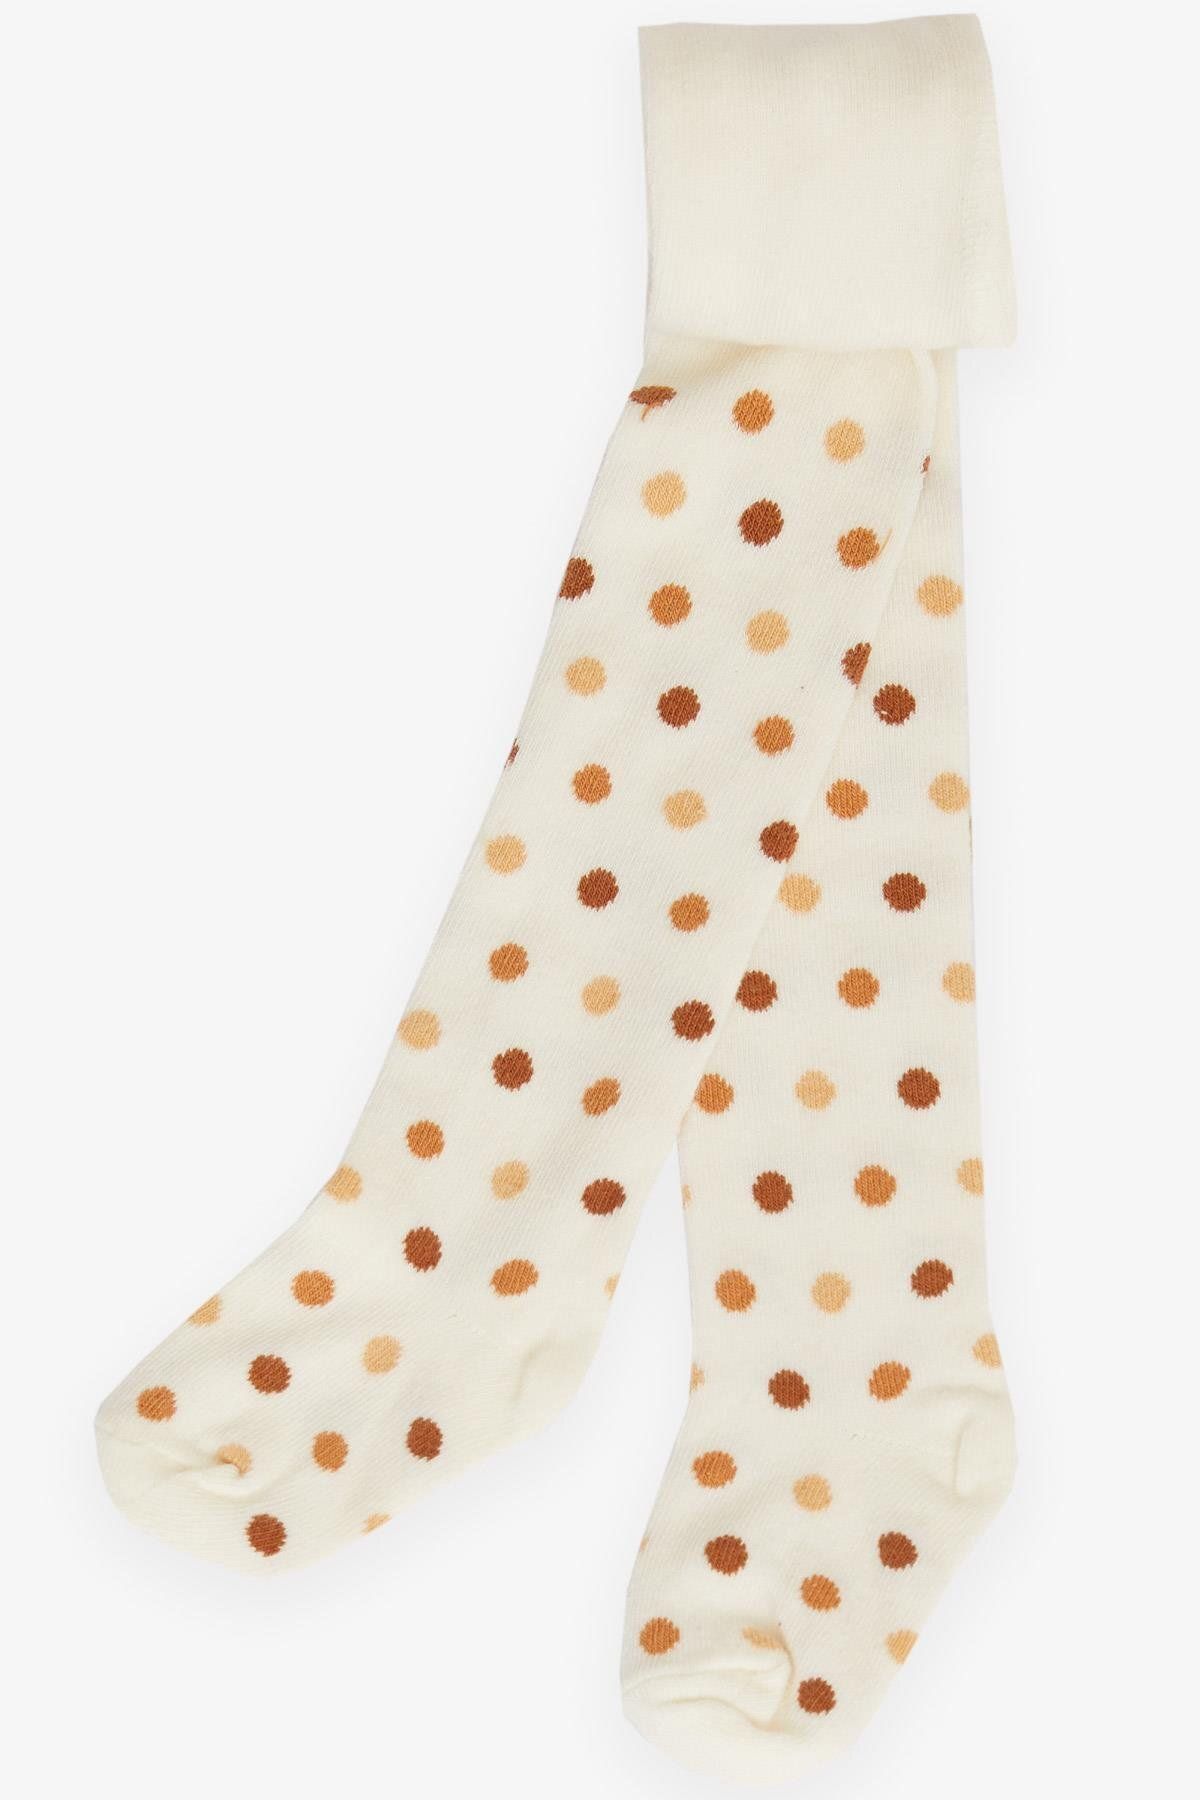 Katamino Artı Kız Bebek Külotlu Çorap Renkli Puantiye Desenli 0-18 Ay, Ekru